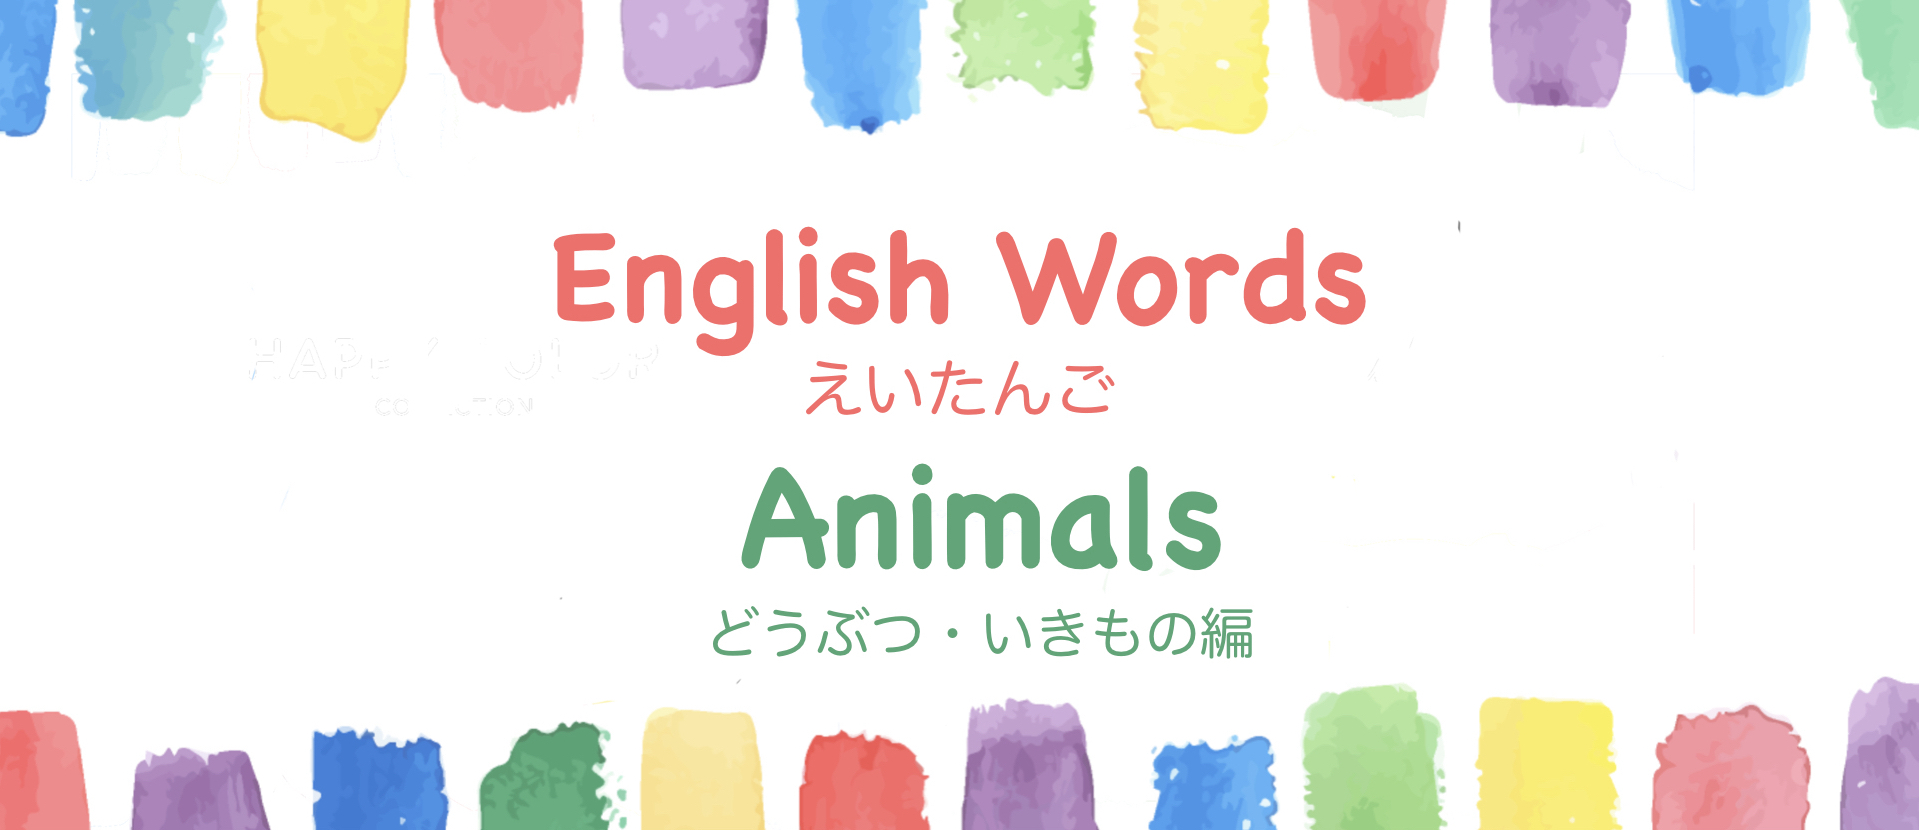 小学生英語 動物 生き物の単語一覧とイラスト付き単語クイズ スライド 学びの匠marikoの学び